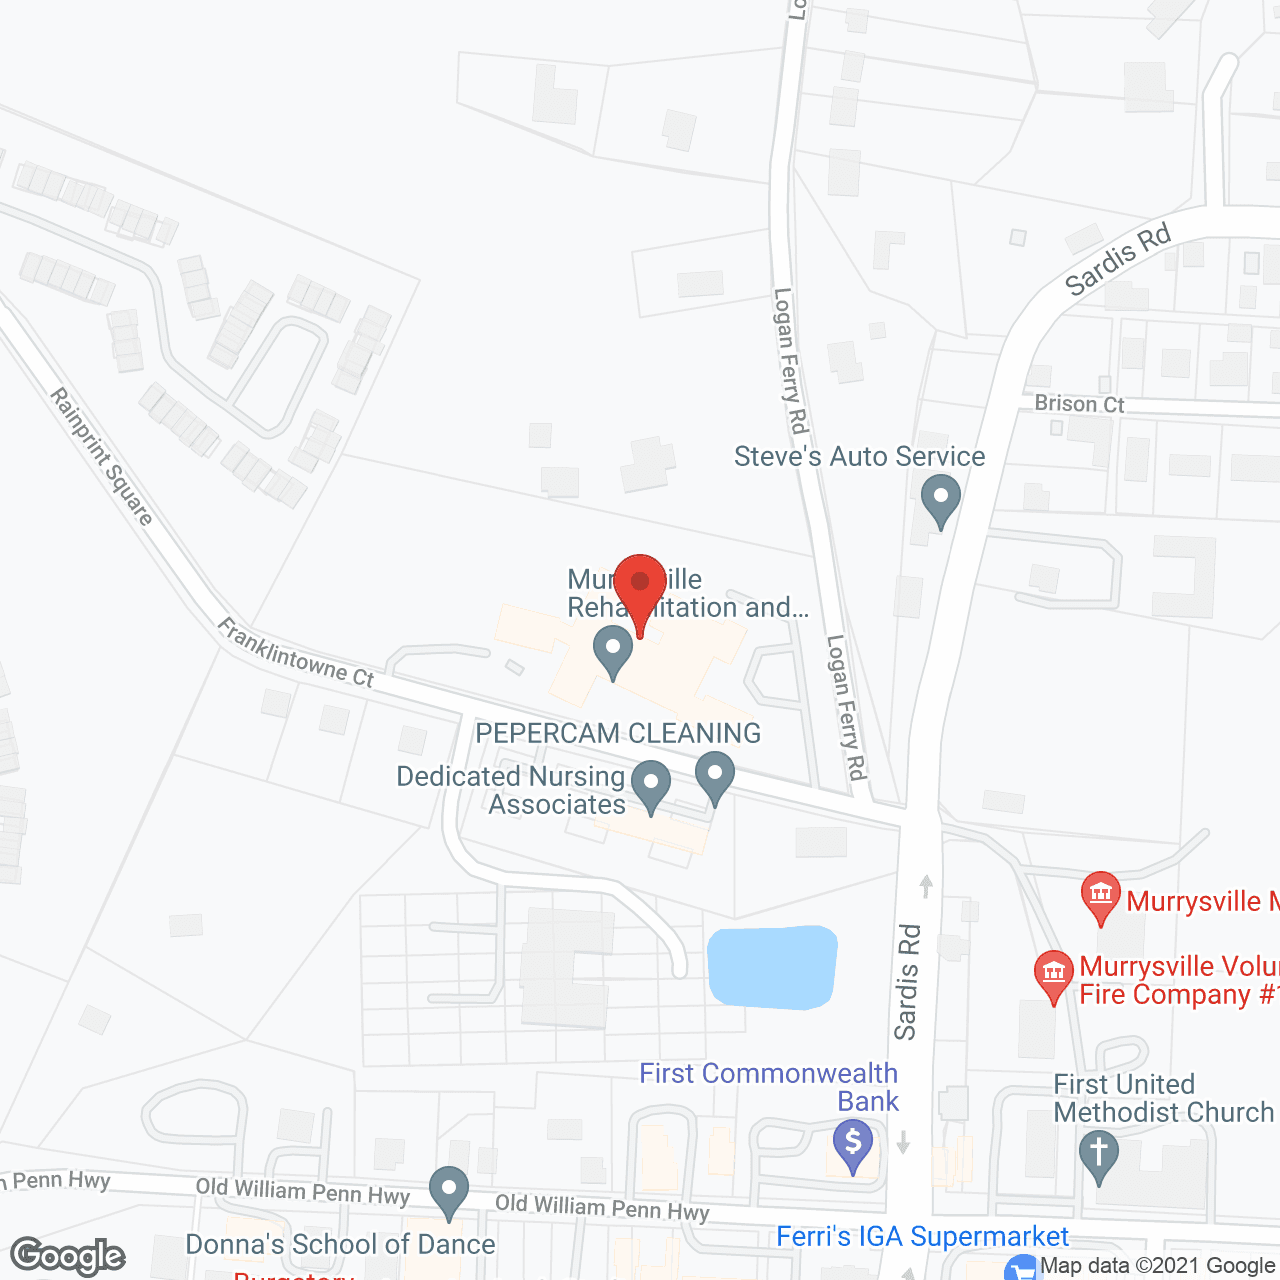 Golden LivingCenter - Murrysville in google map